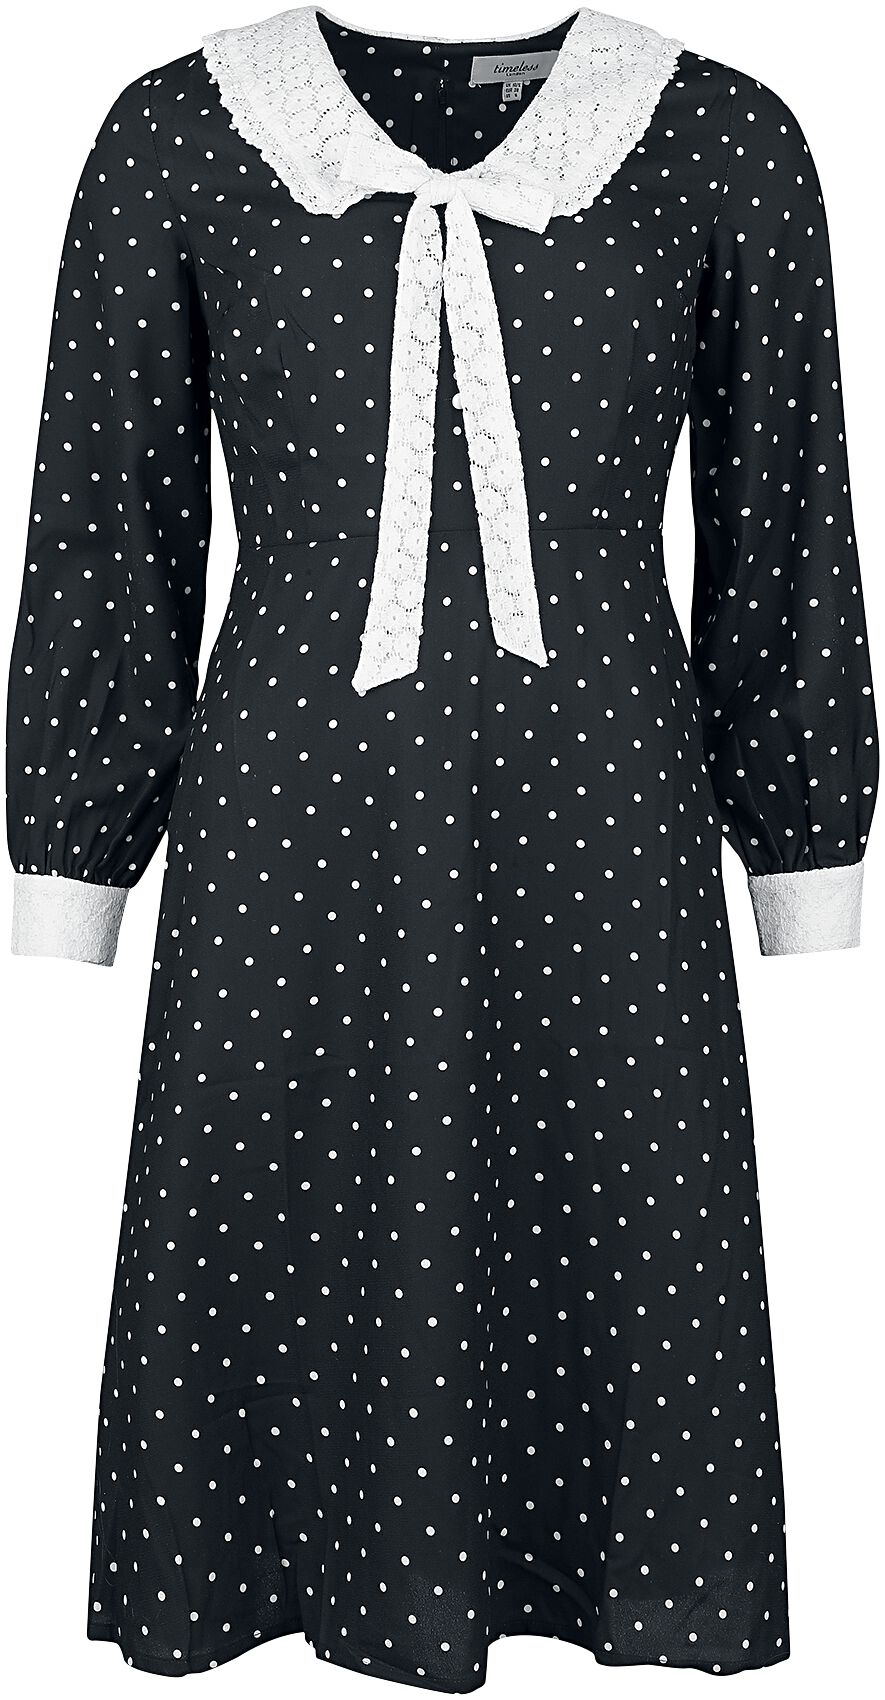 Timeless London Bow Front Dress Mittellanges Kleid schwarz weiß in L